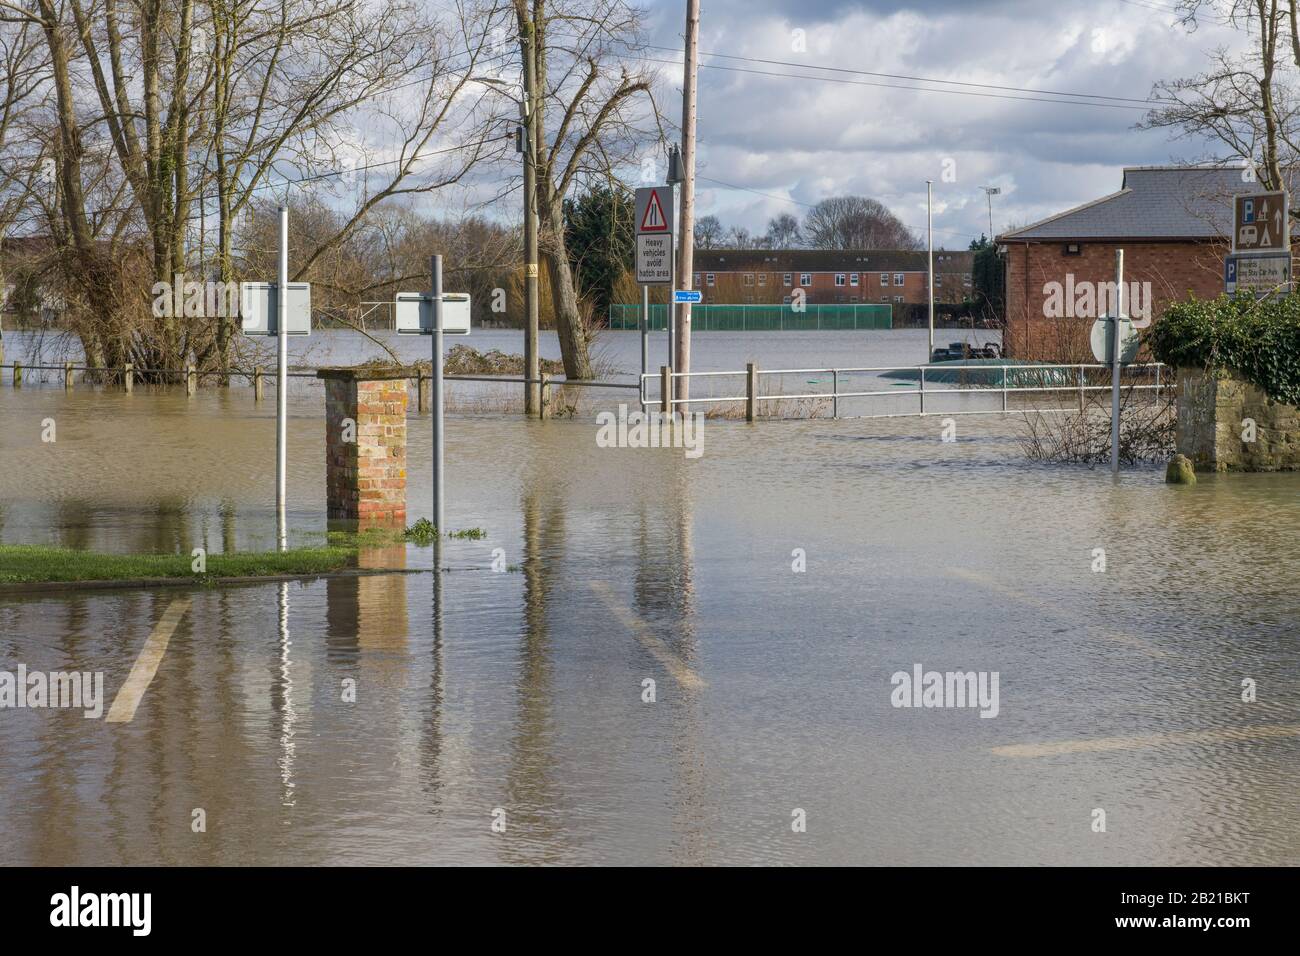 Inondations à Tewkesbury Gloucestershire en février 2020 après une période prolongée de très fortes pluies et de deux rivières, Severn et Avon débordant. Banque D'Images